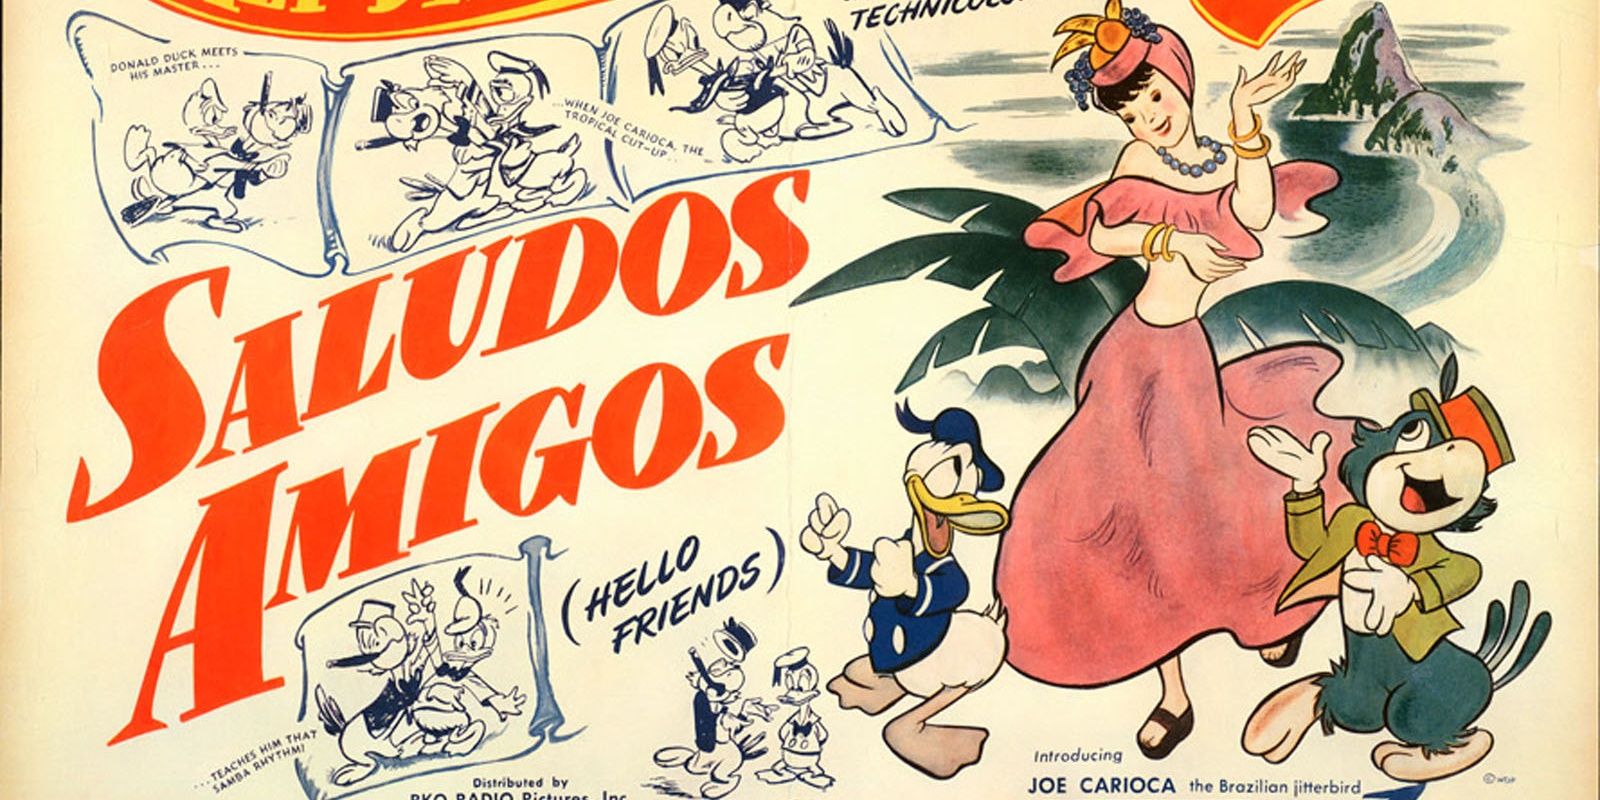 Disney's Salud Amigos.